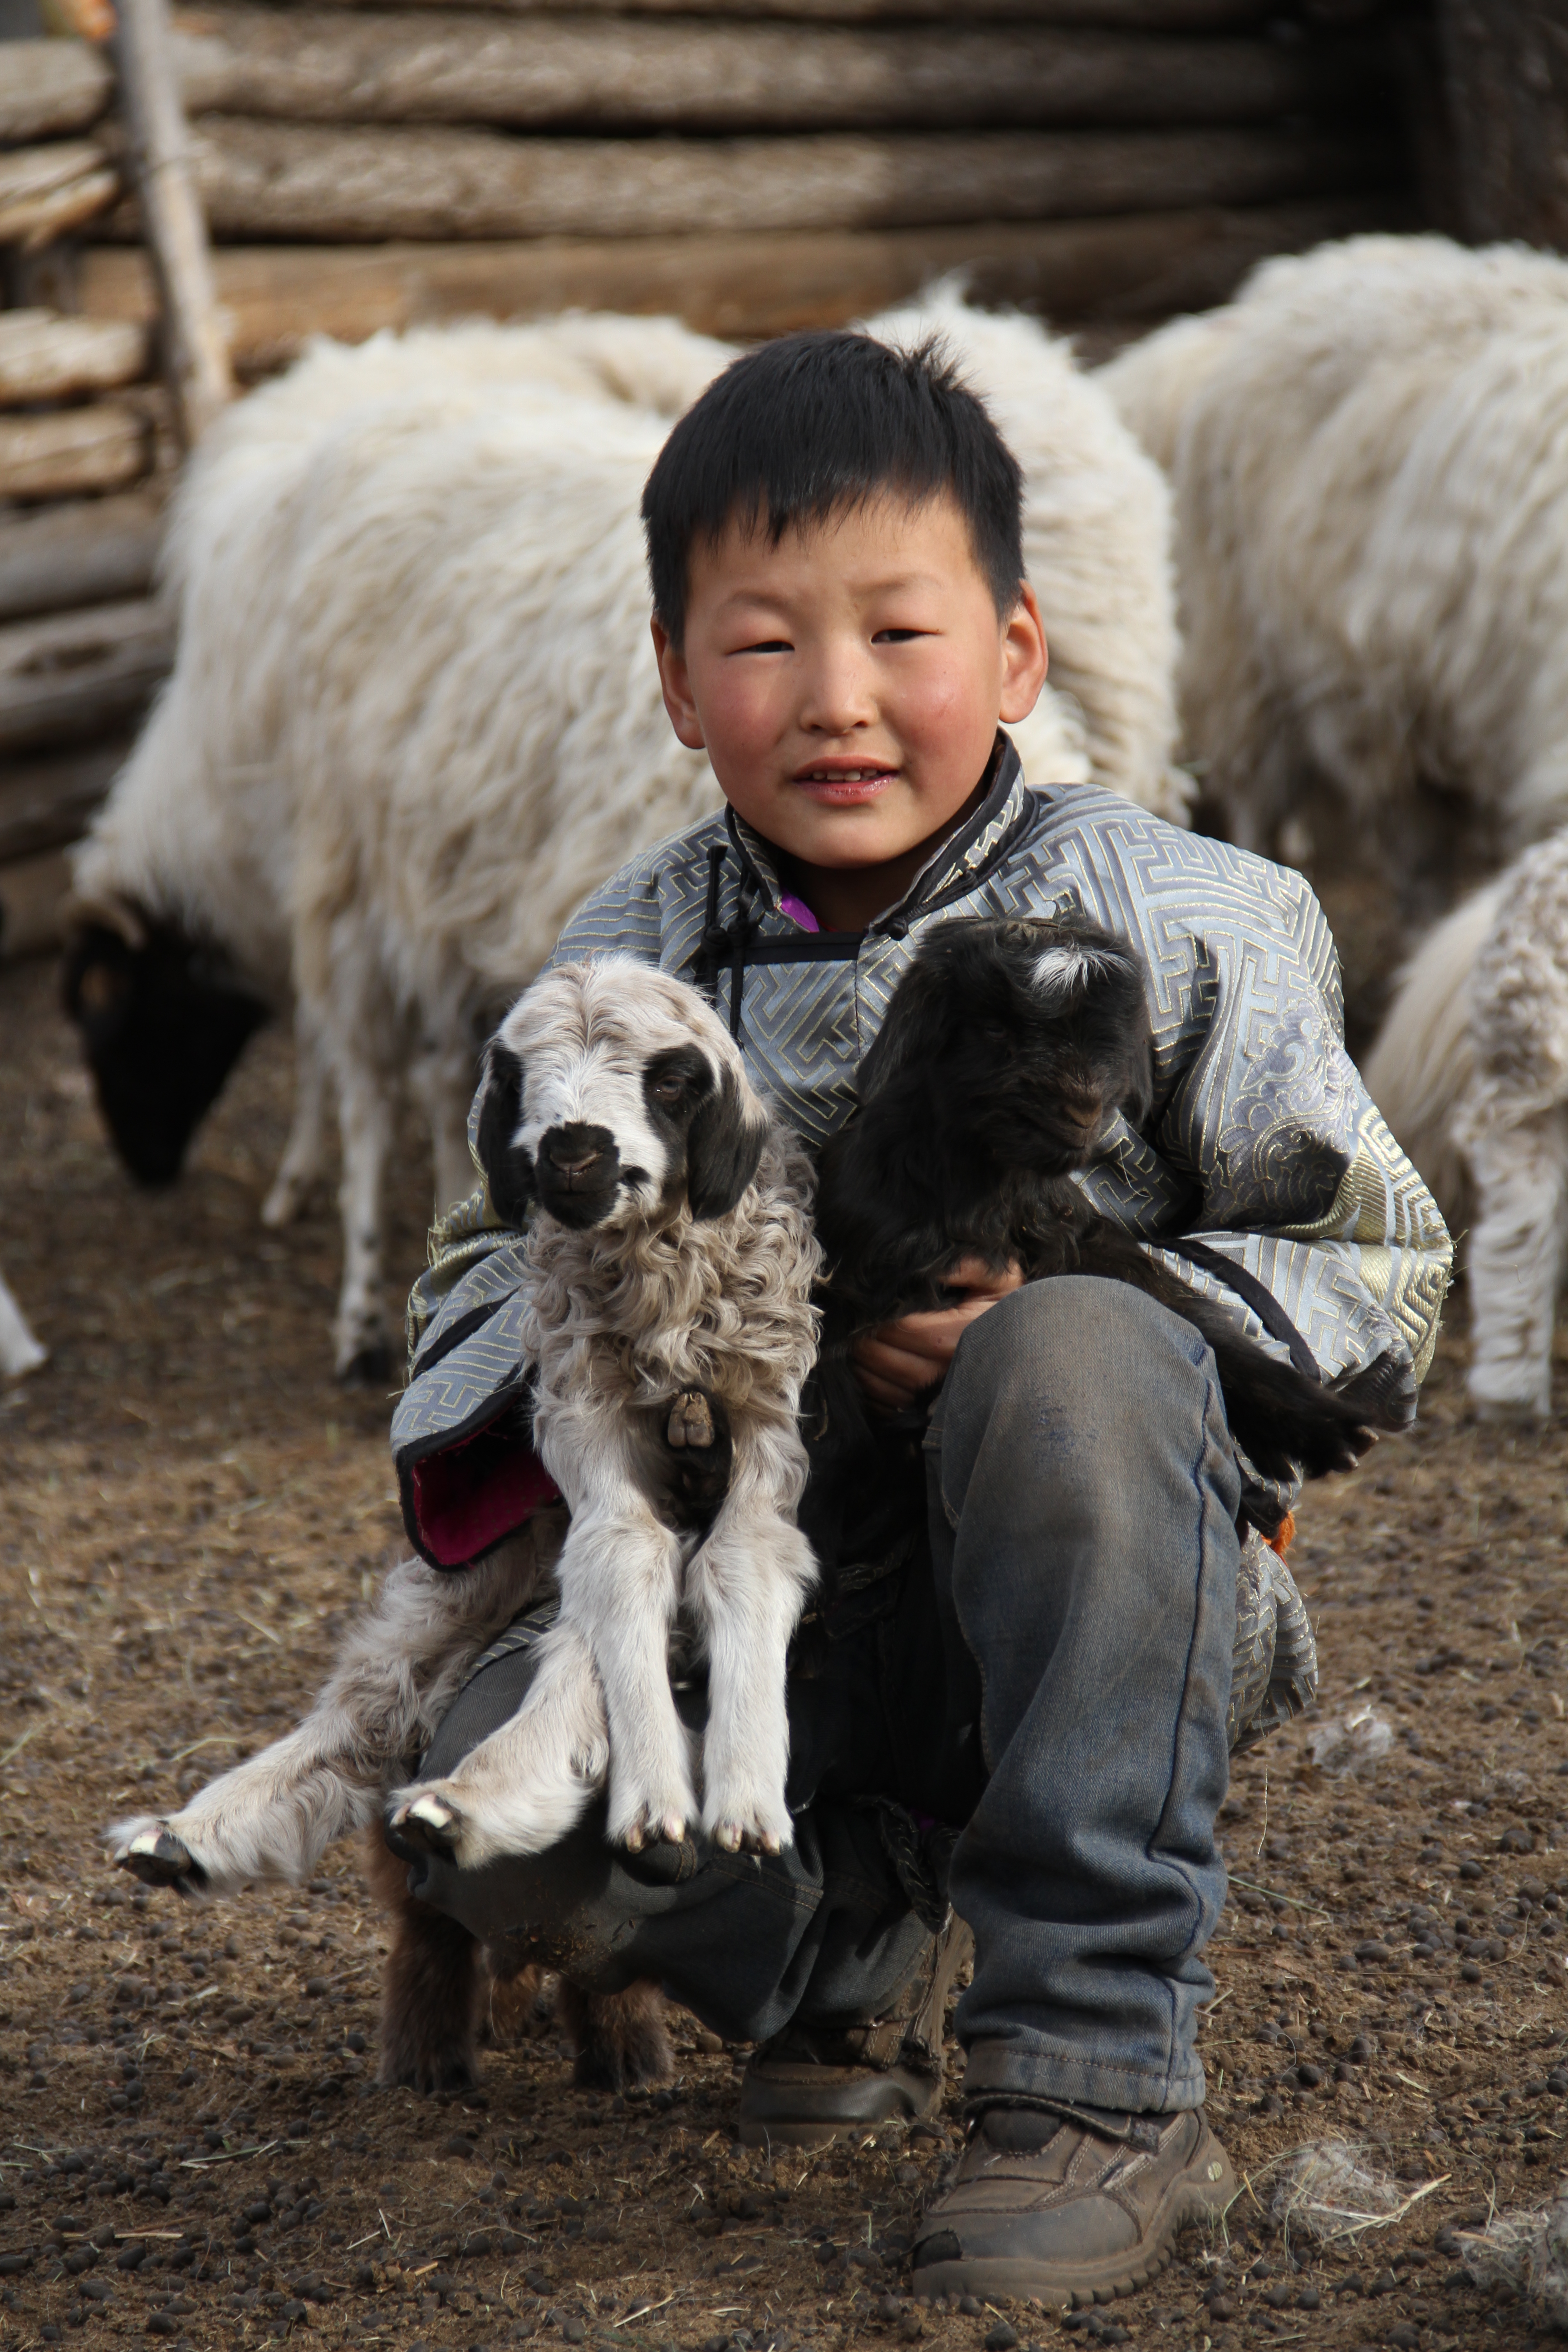 Un ragazzino accovacciato tiene in braccio un agnello nero e uno bianco.